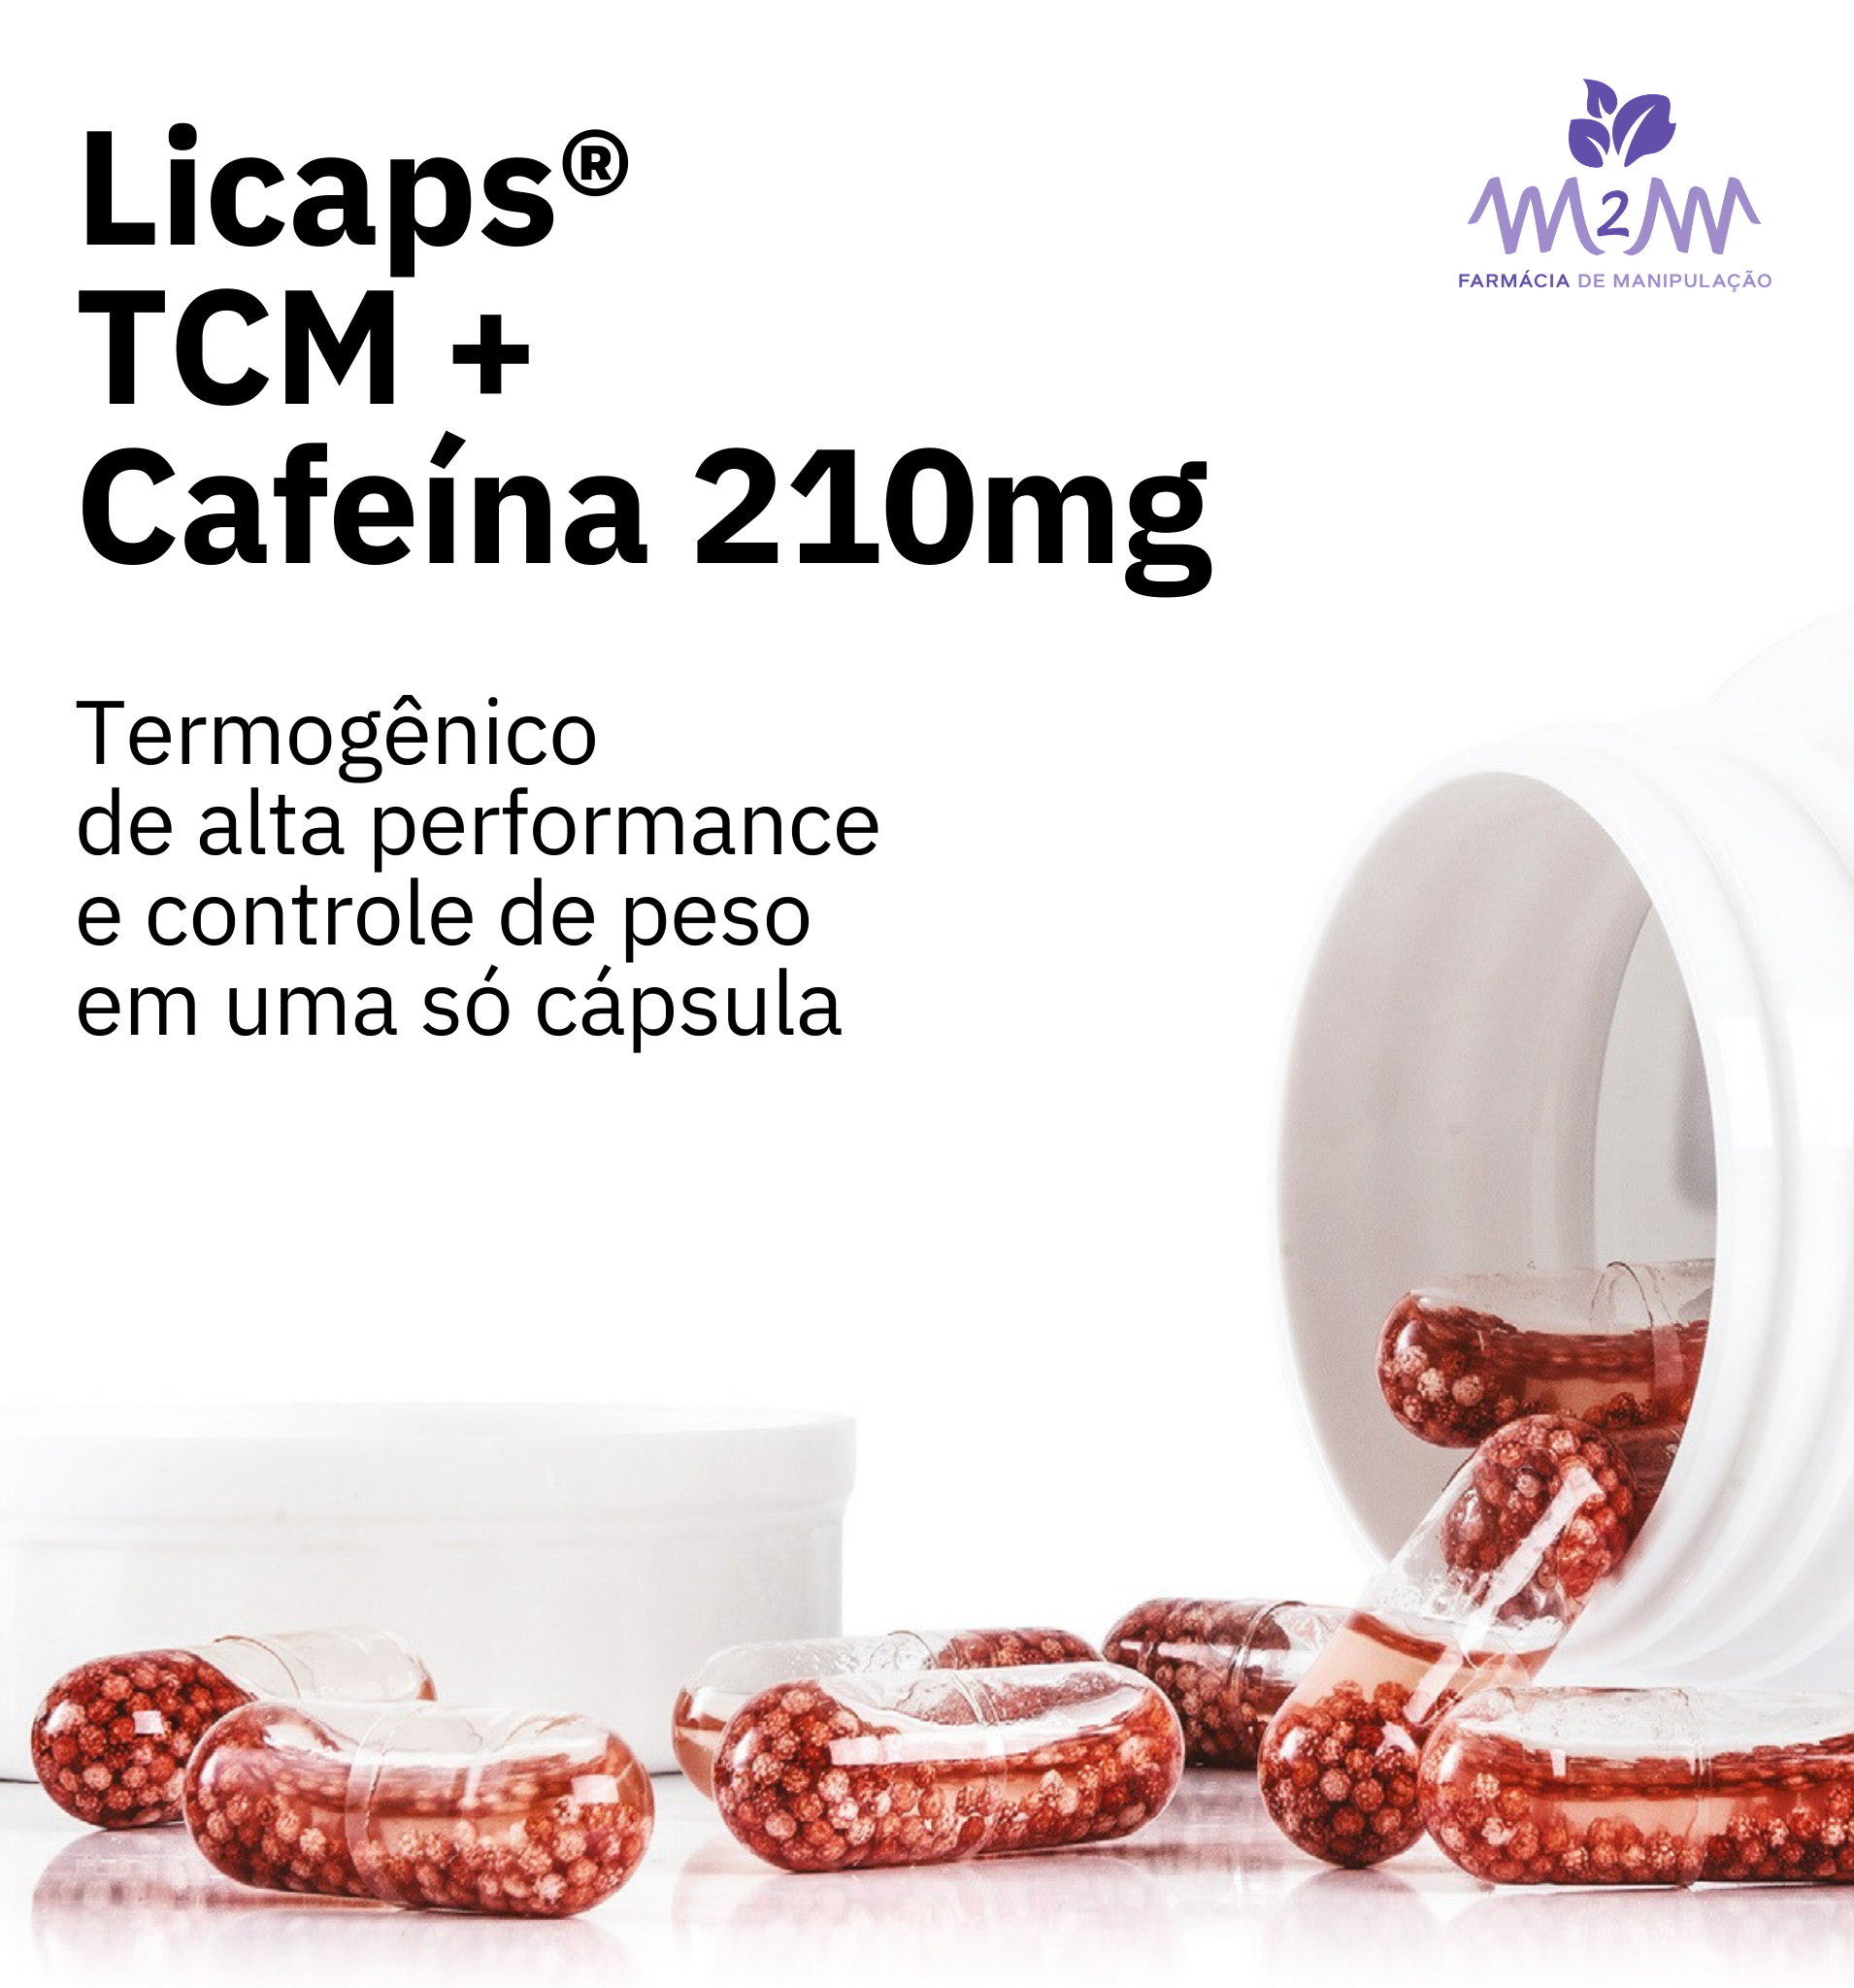 Licaps TCM + Cafeína 210MG - Cápsulas termogênicas de alta performance